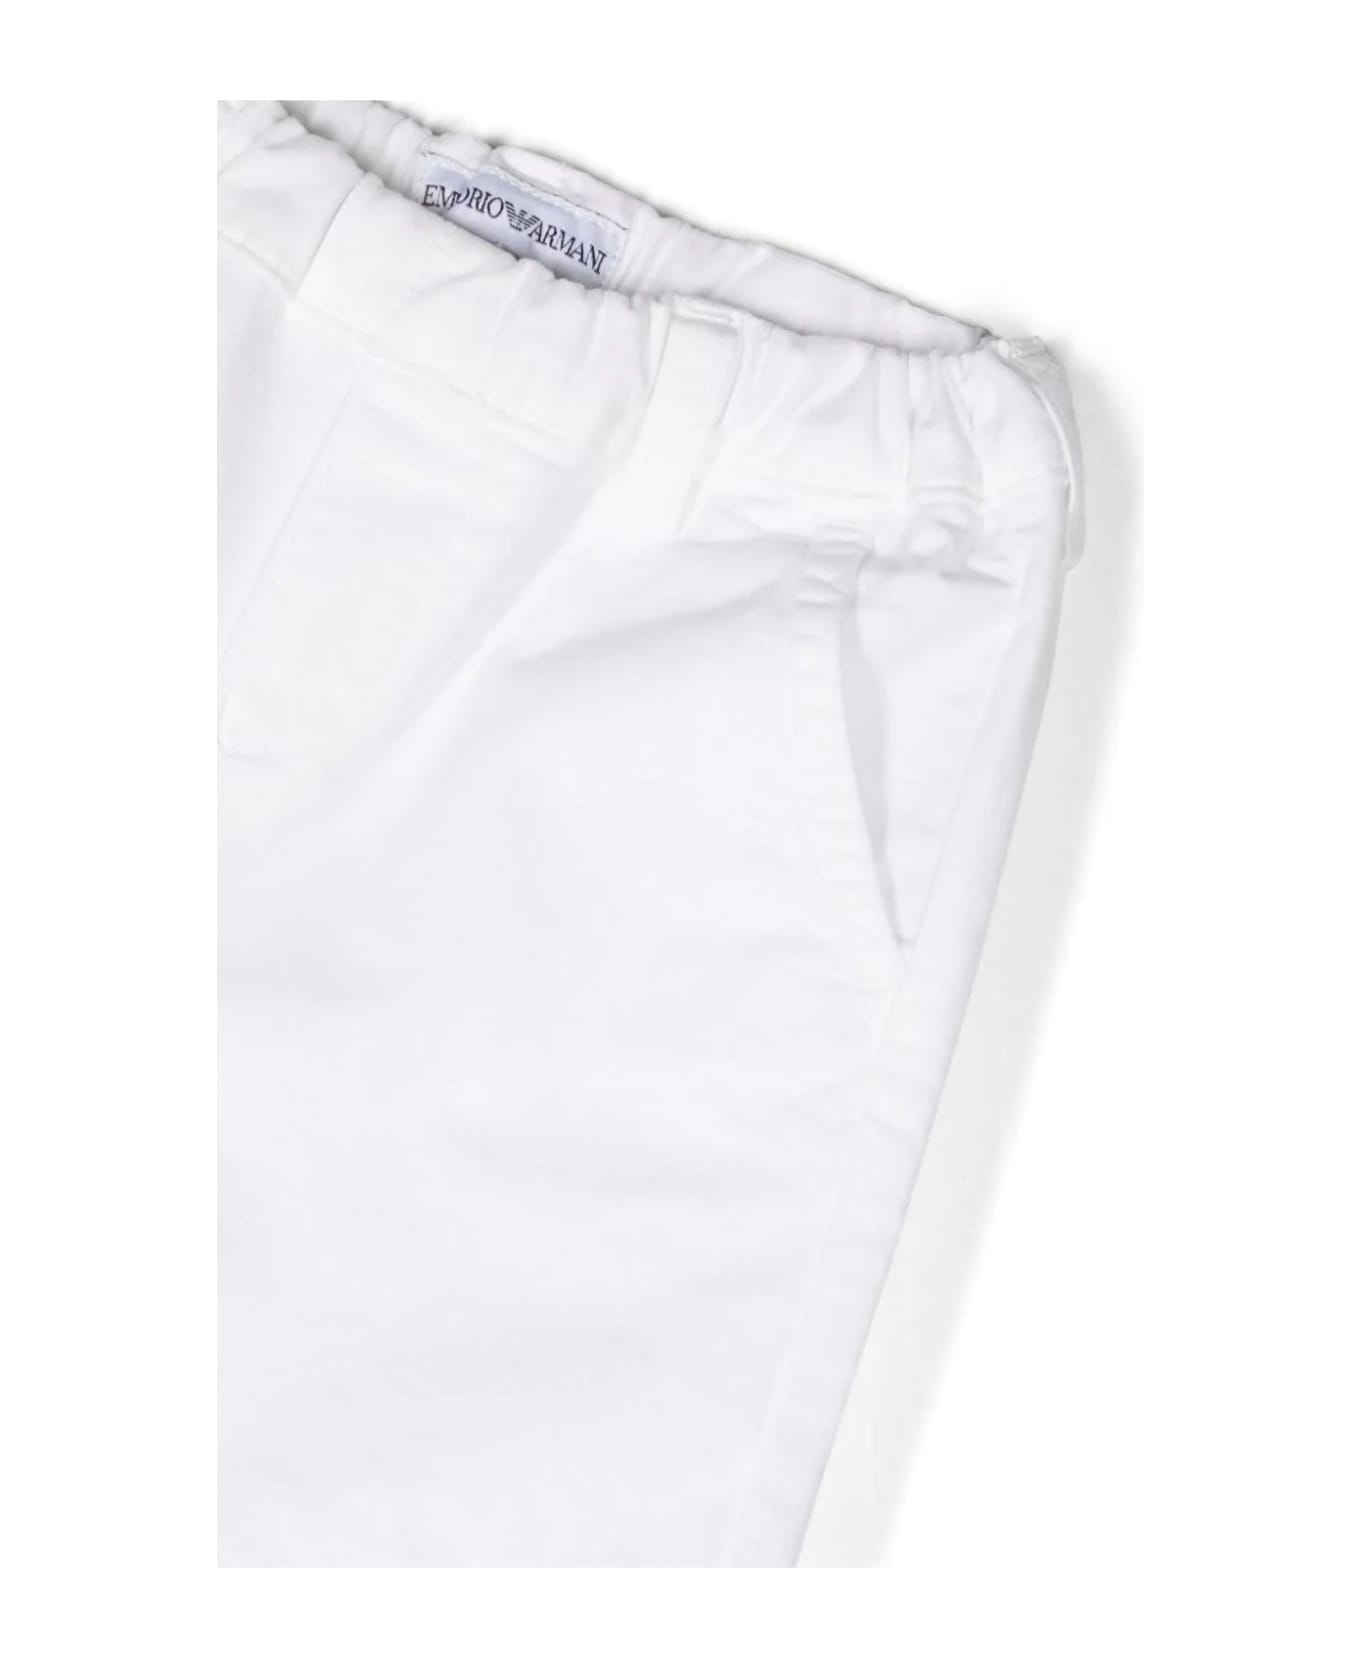 Emporio Armani Shorts White - White